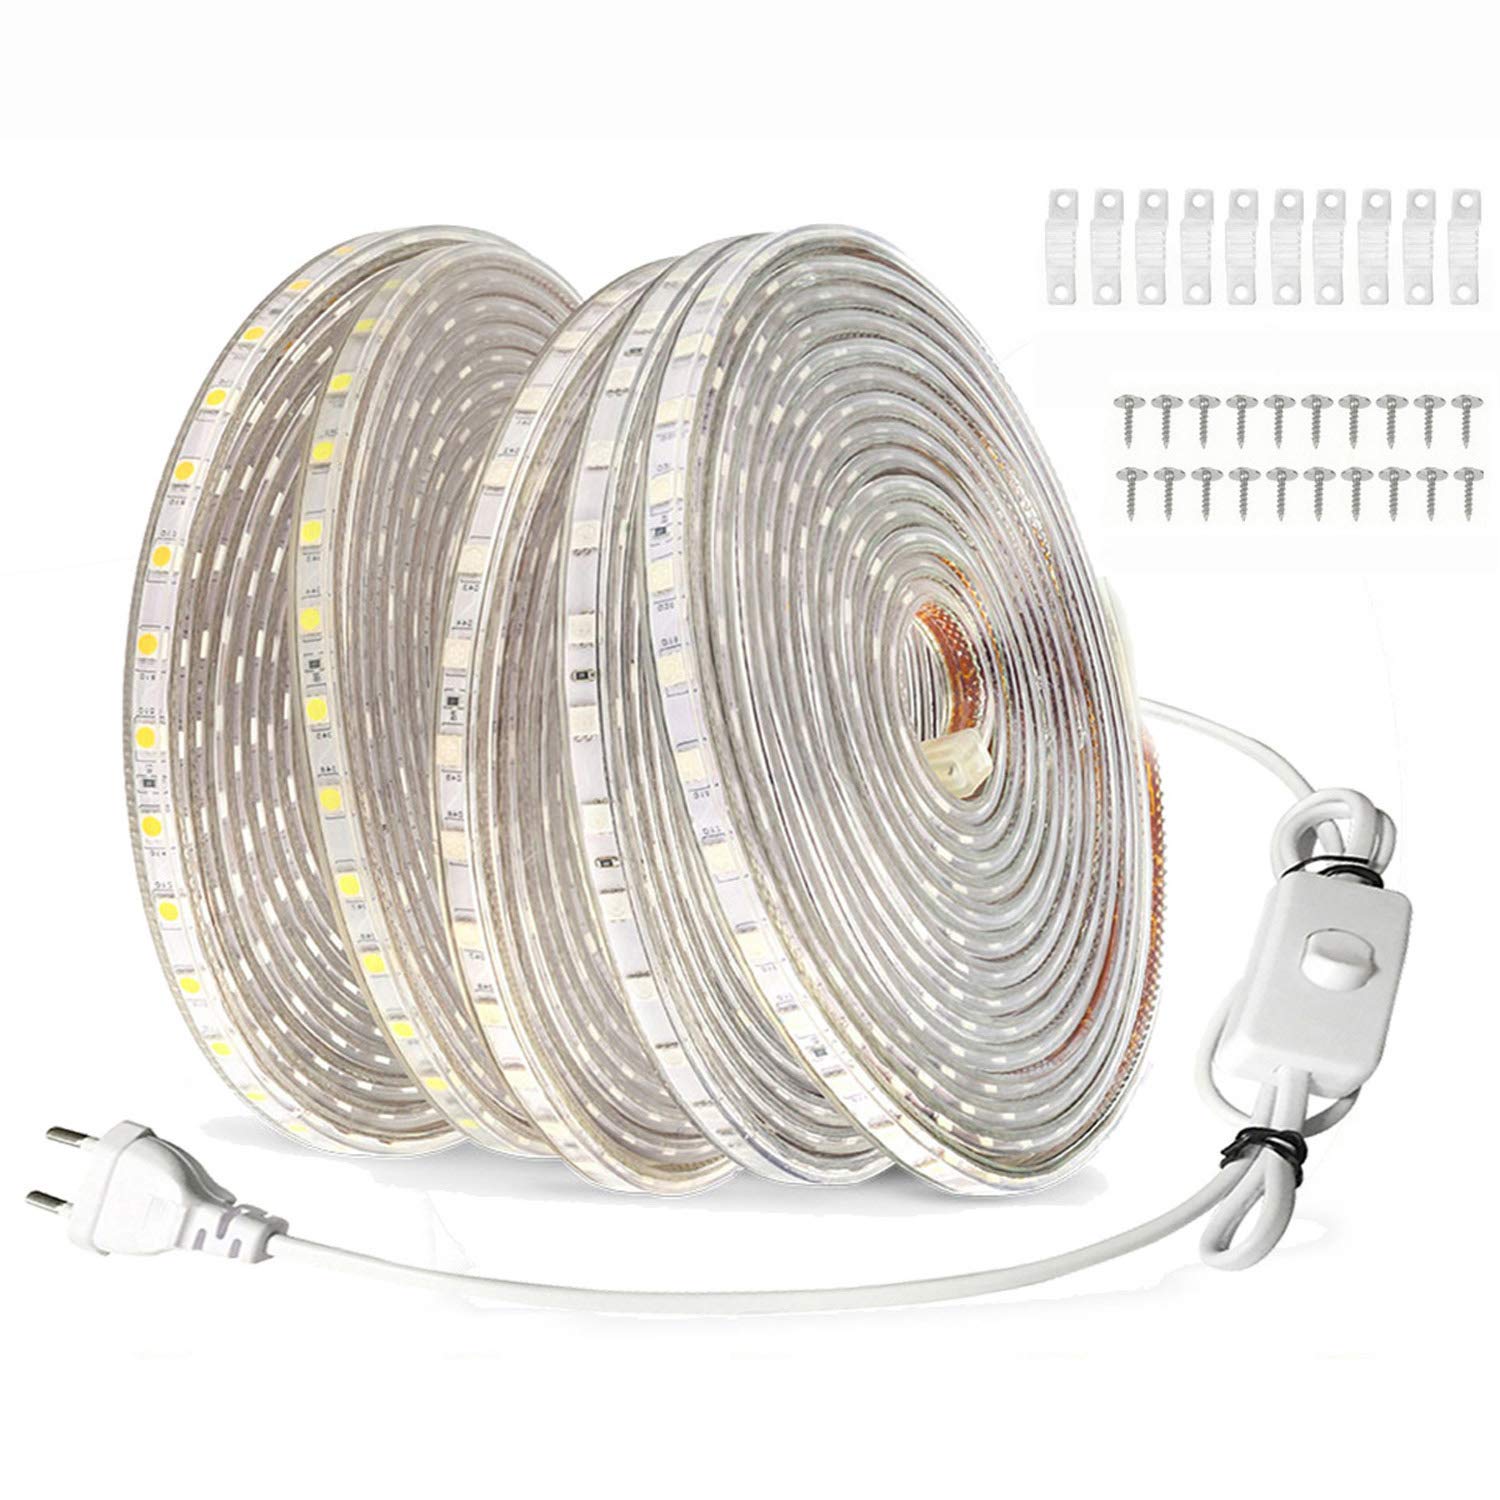 FOLGEMIR 20m LED Band mit Schalter - Kalt Weiß, 220V 230V Beleuchtung, 60 Leds/m, IP65 wasserdicht Lichtschlauch (Kalt Weiß, 20m)